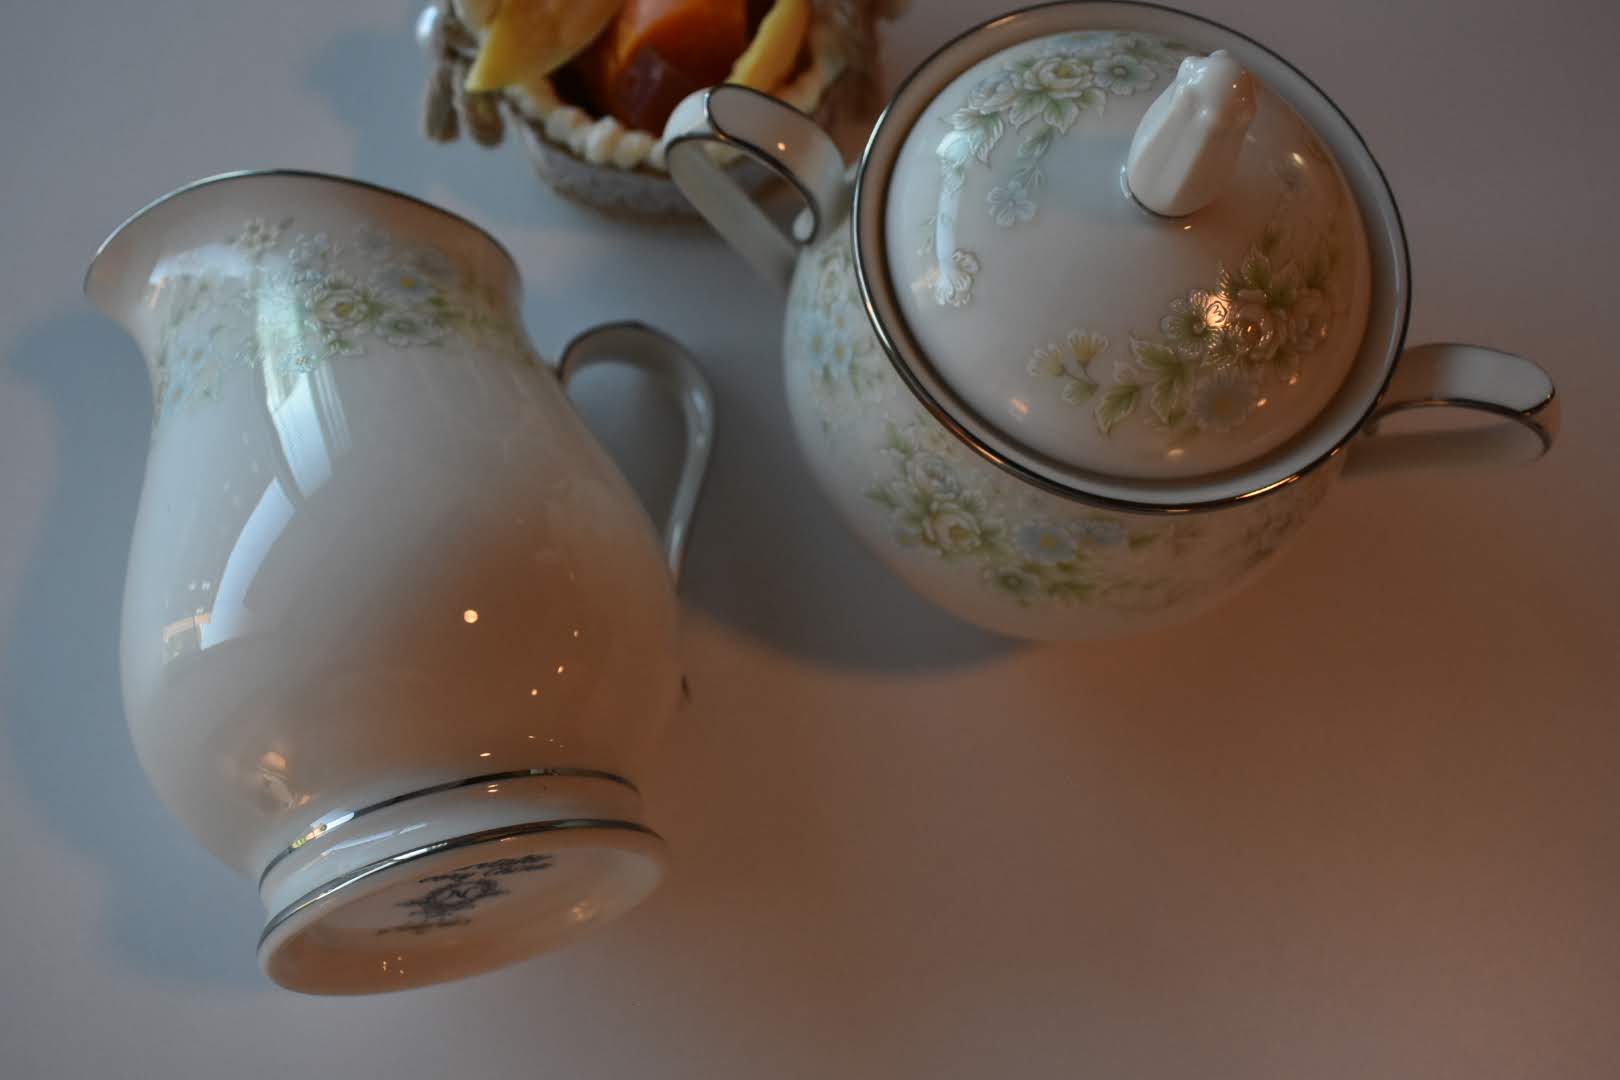 Noritake - Porcelain Fine China - Floral Pattern Platinum Trim - Sugar Bowl and Creamer Bowl